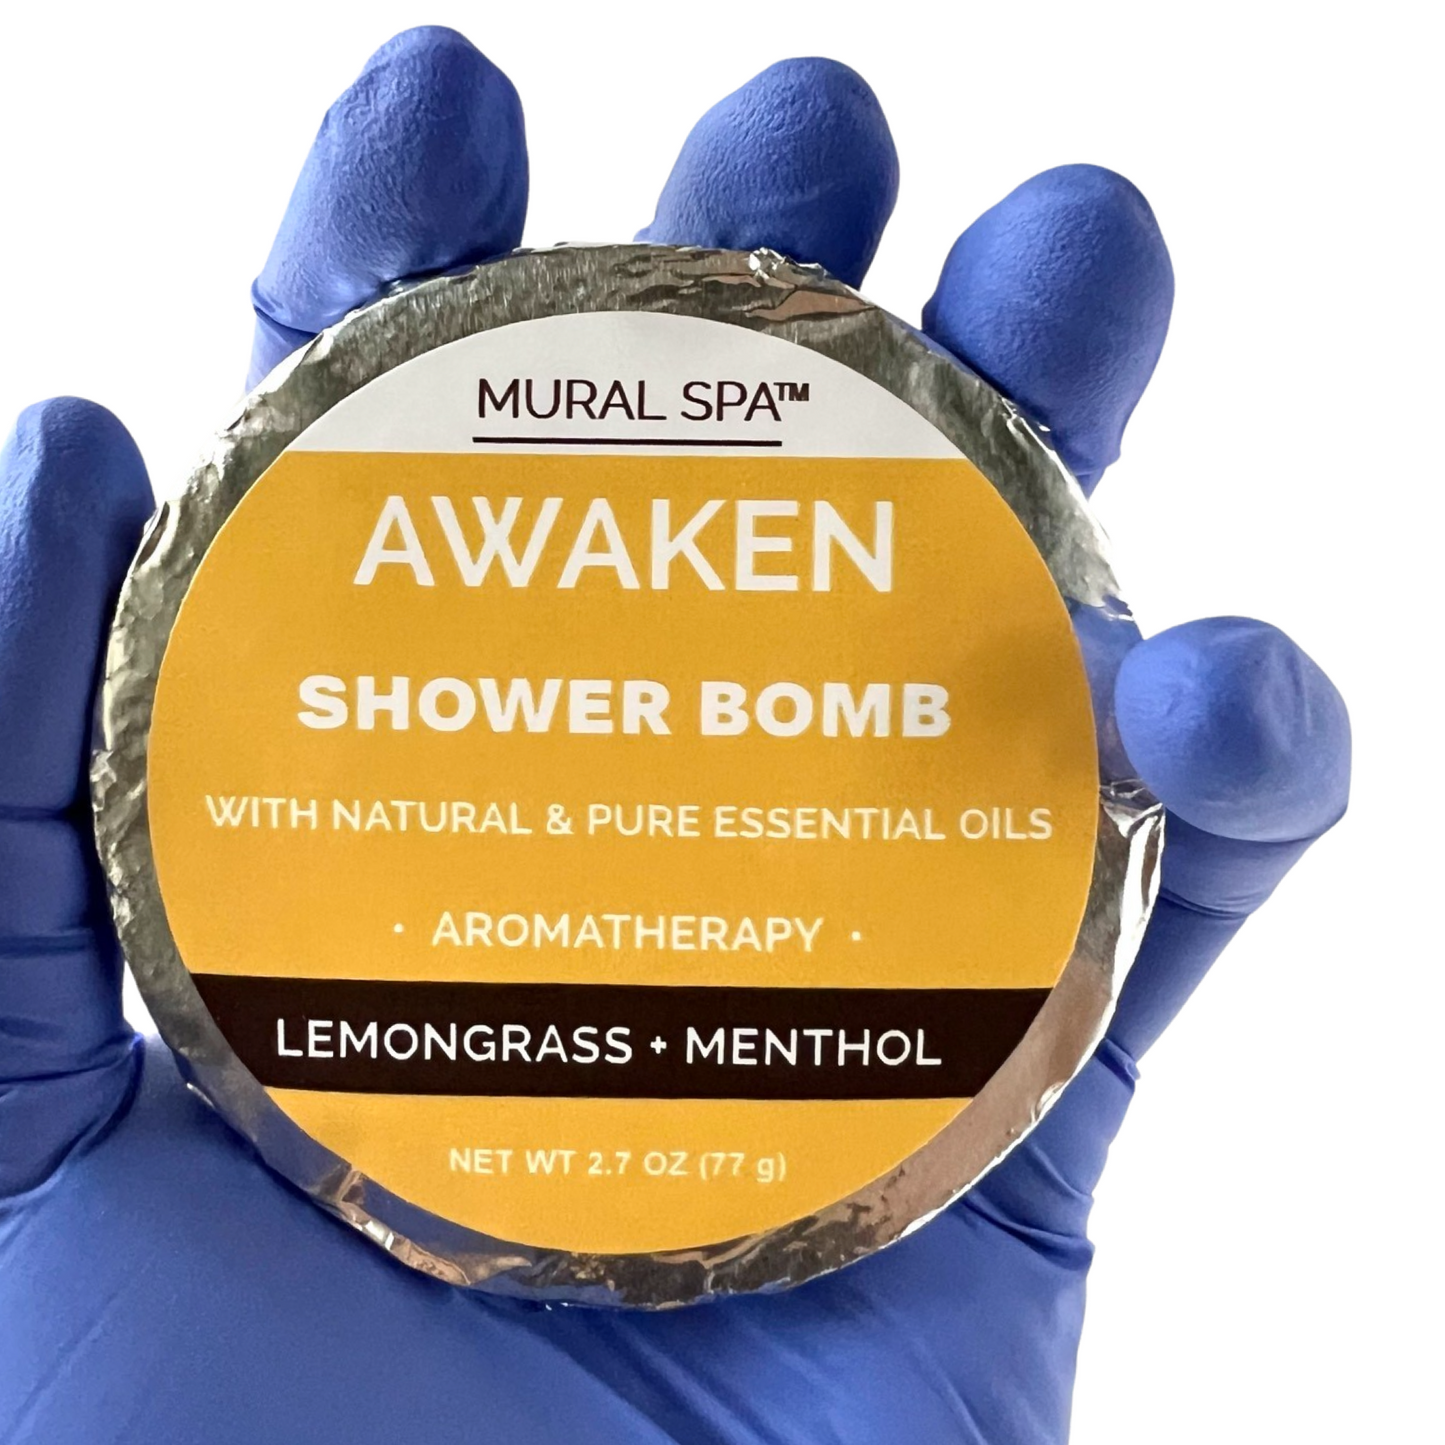 Awaken Shower Bomb (Lemongrass and Menthol)